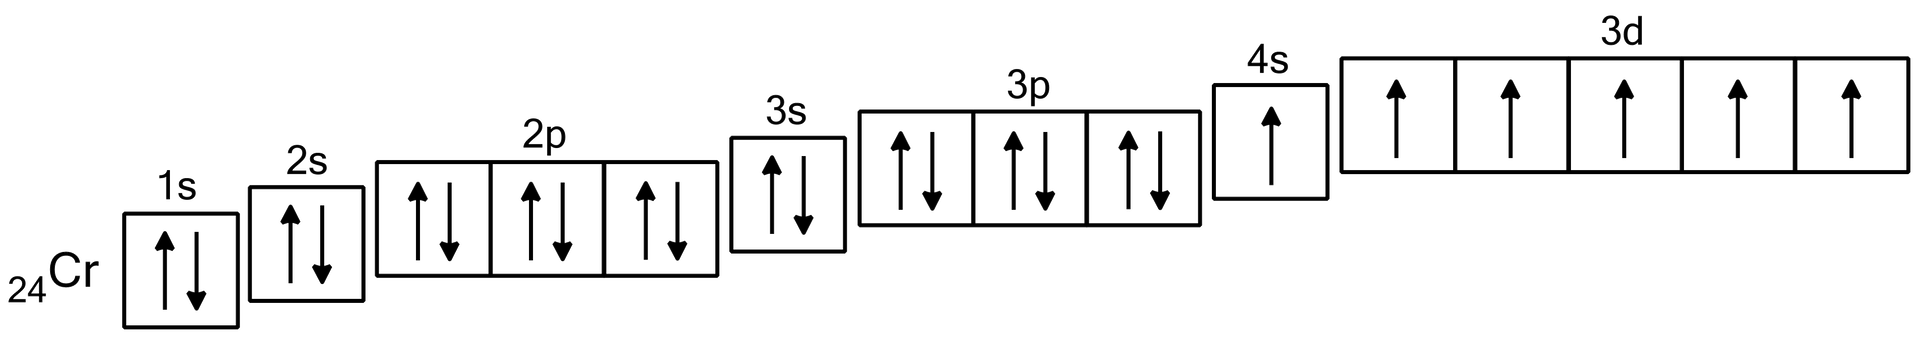 Ilustracja przedstawiająca zapis klatkowy konfiguracji elektronowej chromu. Chrom o symbolu Cr i liczbie atomowej 24 ma następujący zapis klatkowy: 1s jedna klatka z dwiema pionowymi strzałkami skierowanymi w przeciwnych kierunkach, 2s jedna klatka z dwiema strzałkami skierowanymi w przeciwnych kierunkach, 2p trzy klatki - każda z dwiema strzałkami skierowanymi w przeciwnych kierunkach, 3s klatka z dwiema strzałkami skierowanymi w przeciwnych kierunkach, 3p trzy klatki - każda z dwiema strzałkami skierowanymi w przeciwnych kierunkach, 4s jedna klatka z jedną strzałką skierowaną w górę, 3d pięć klatek - każda z jedną strzałką skierowaną do góry. Klatki podpowłok tworzą układ przypominający schodki - od najniższego 1s do najwyższego 3d. Inny zapis konfiguracji elektronowej chromu: 1s22s22p63s23p64s13d5.